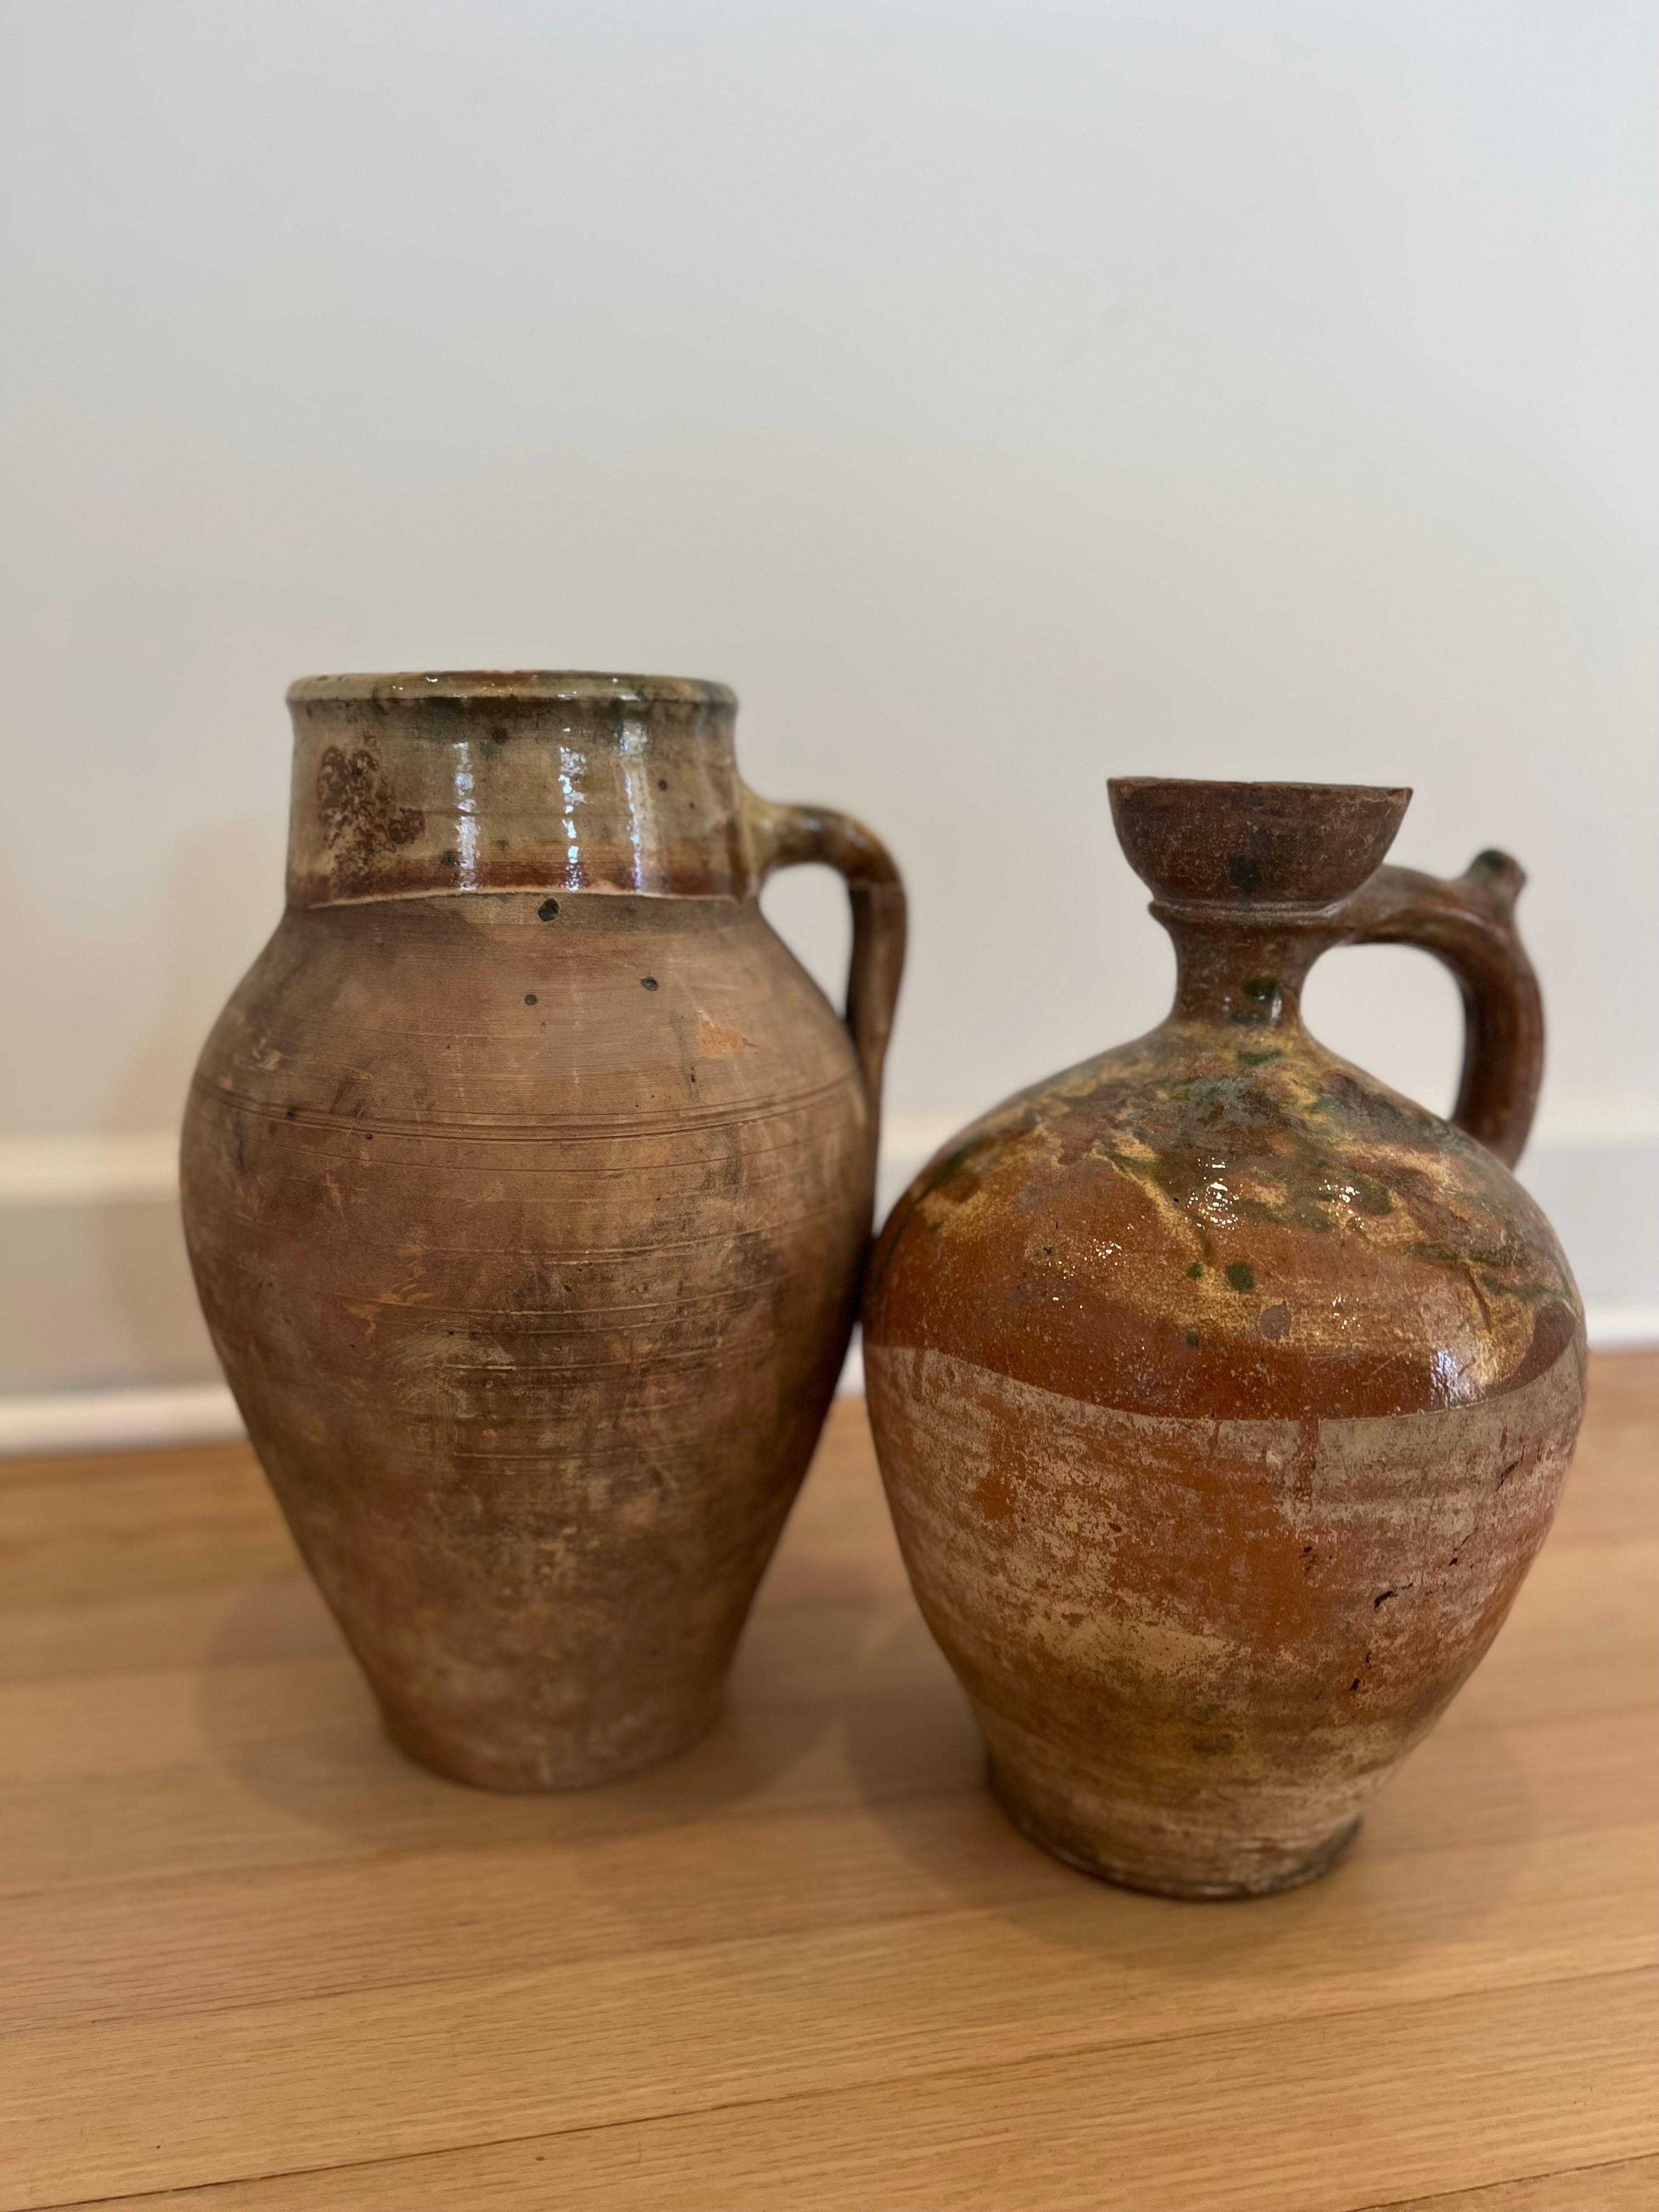 Paire de poteries Amphora anciennes de style provincial français.  L'un mesure environ 14 pouces de haut et l'autre environ 13 pouces de haut.

Couleurs et patine très similaires.   L'un d'eux semble avoir un bec verseur ébréché. 

Voir les images